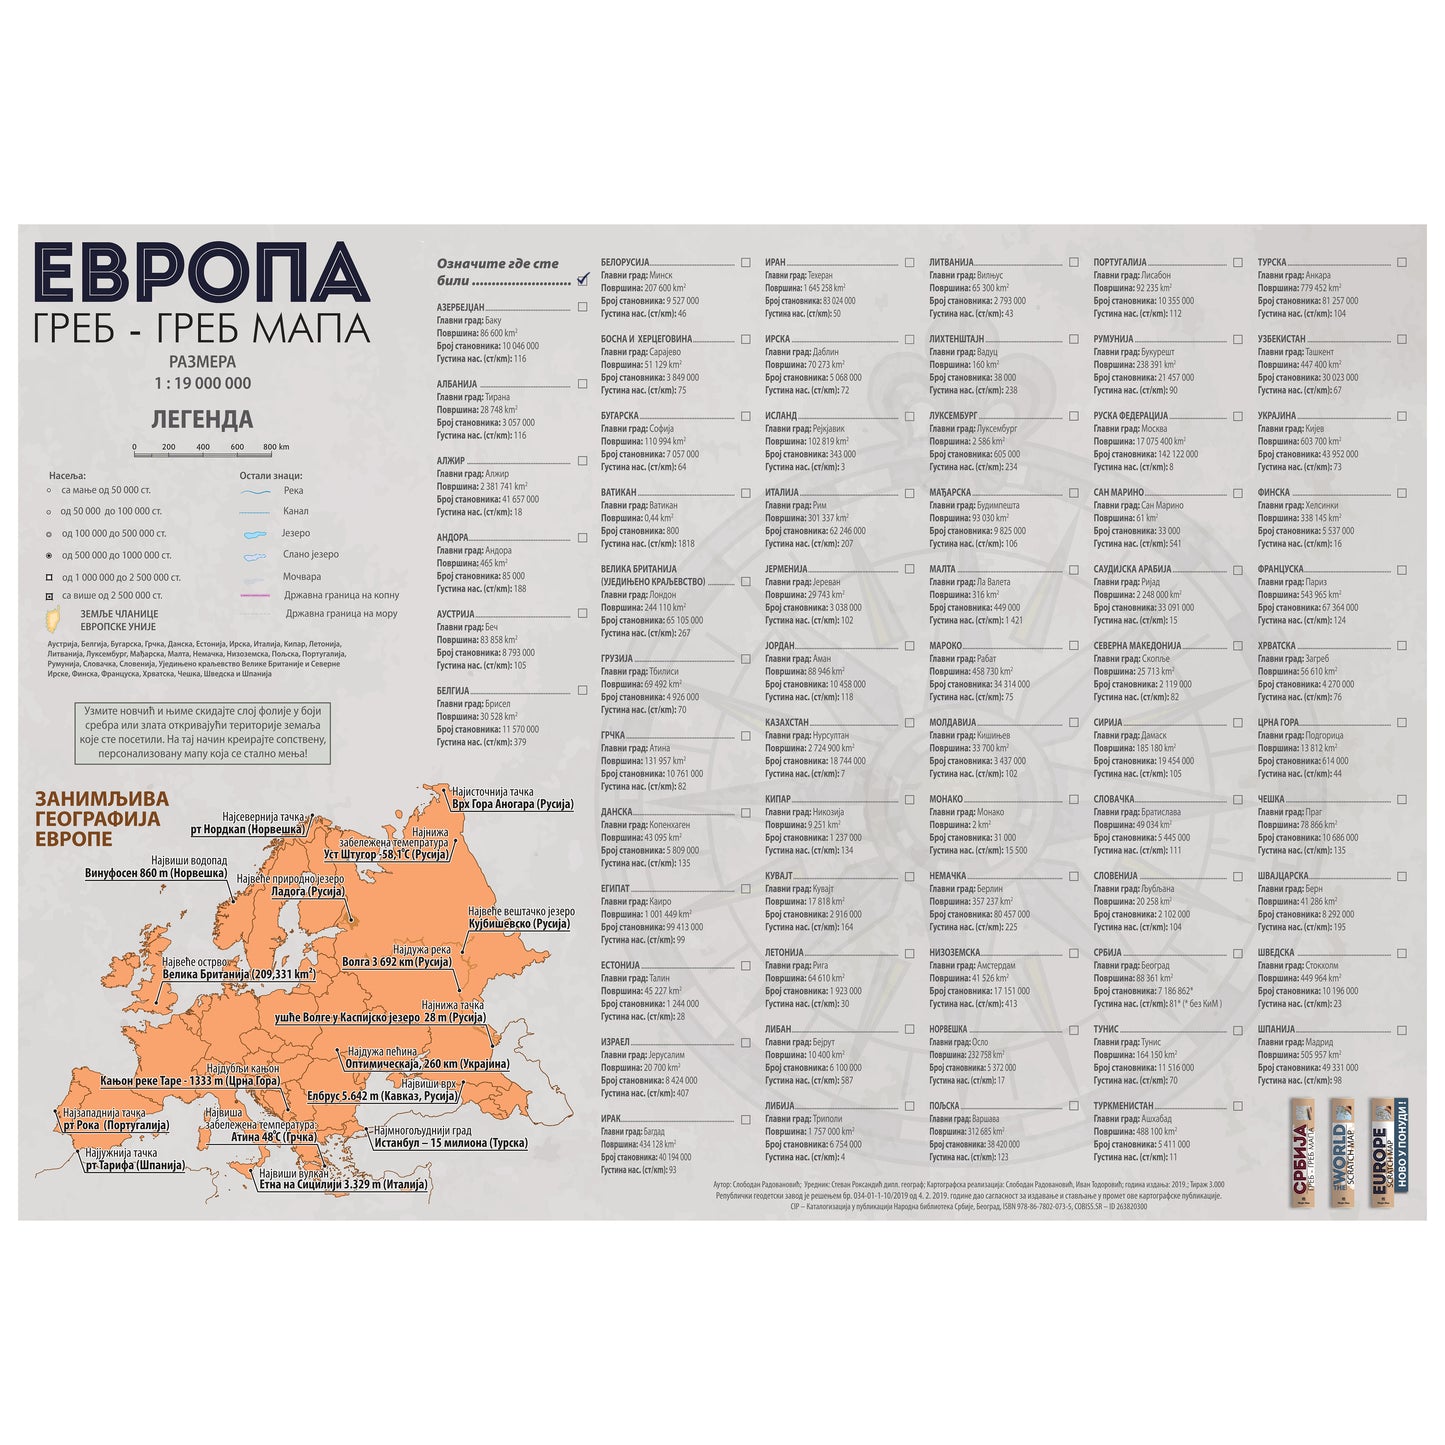 Europe scratch map